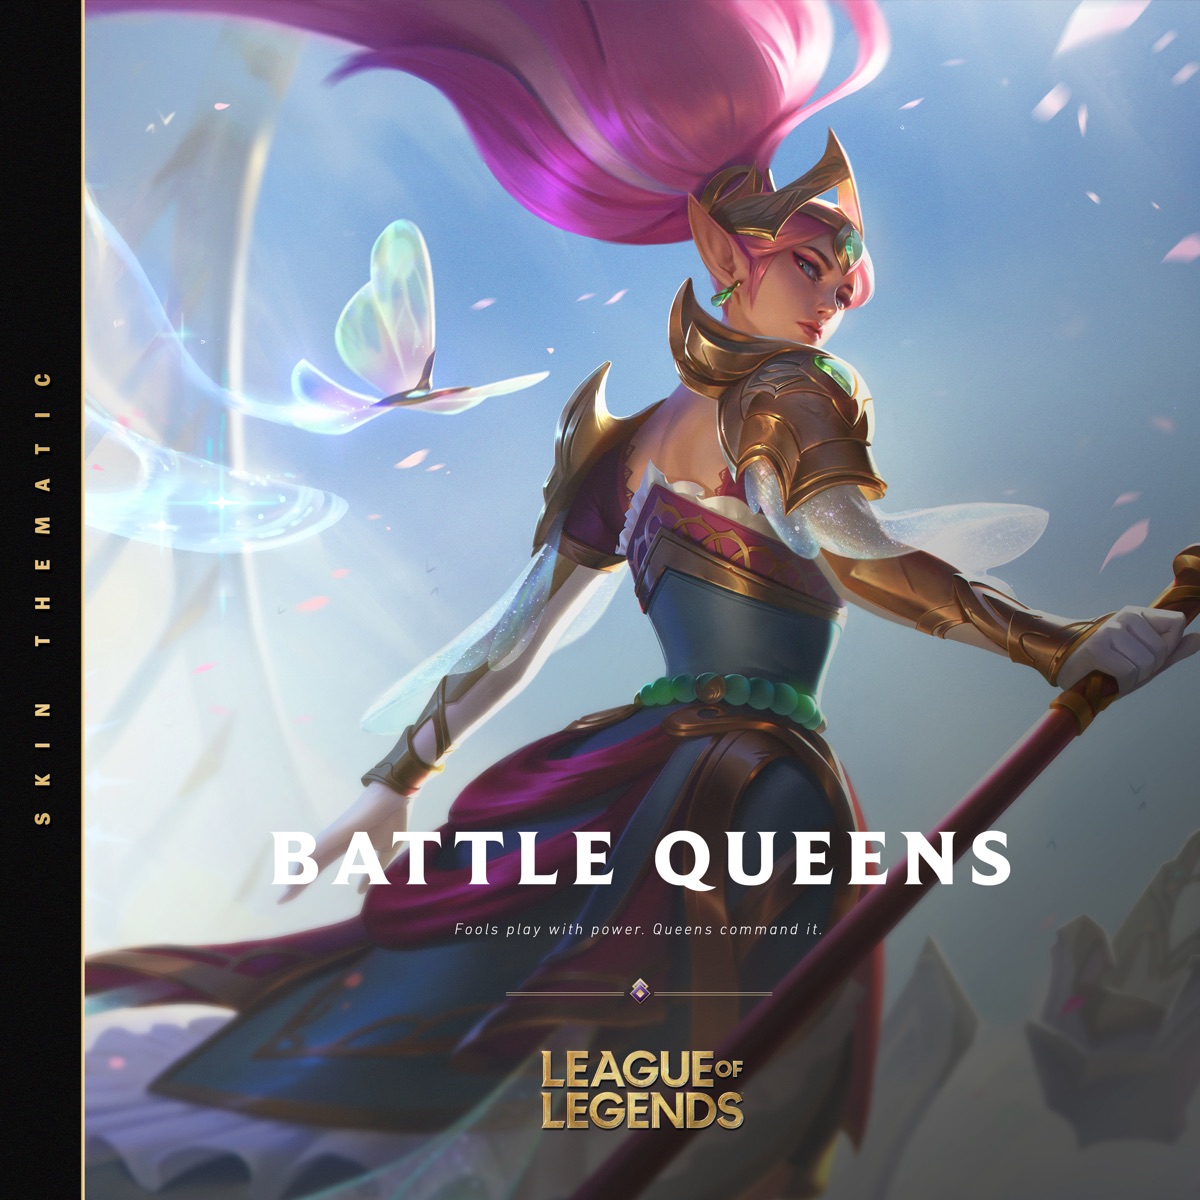 『League of Legends - Battle Queens - 2020 (feat. Shihori) 歌詞』収録の『Battle Queens - 2020』ジャケット